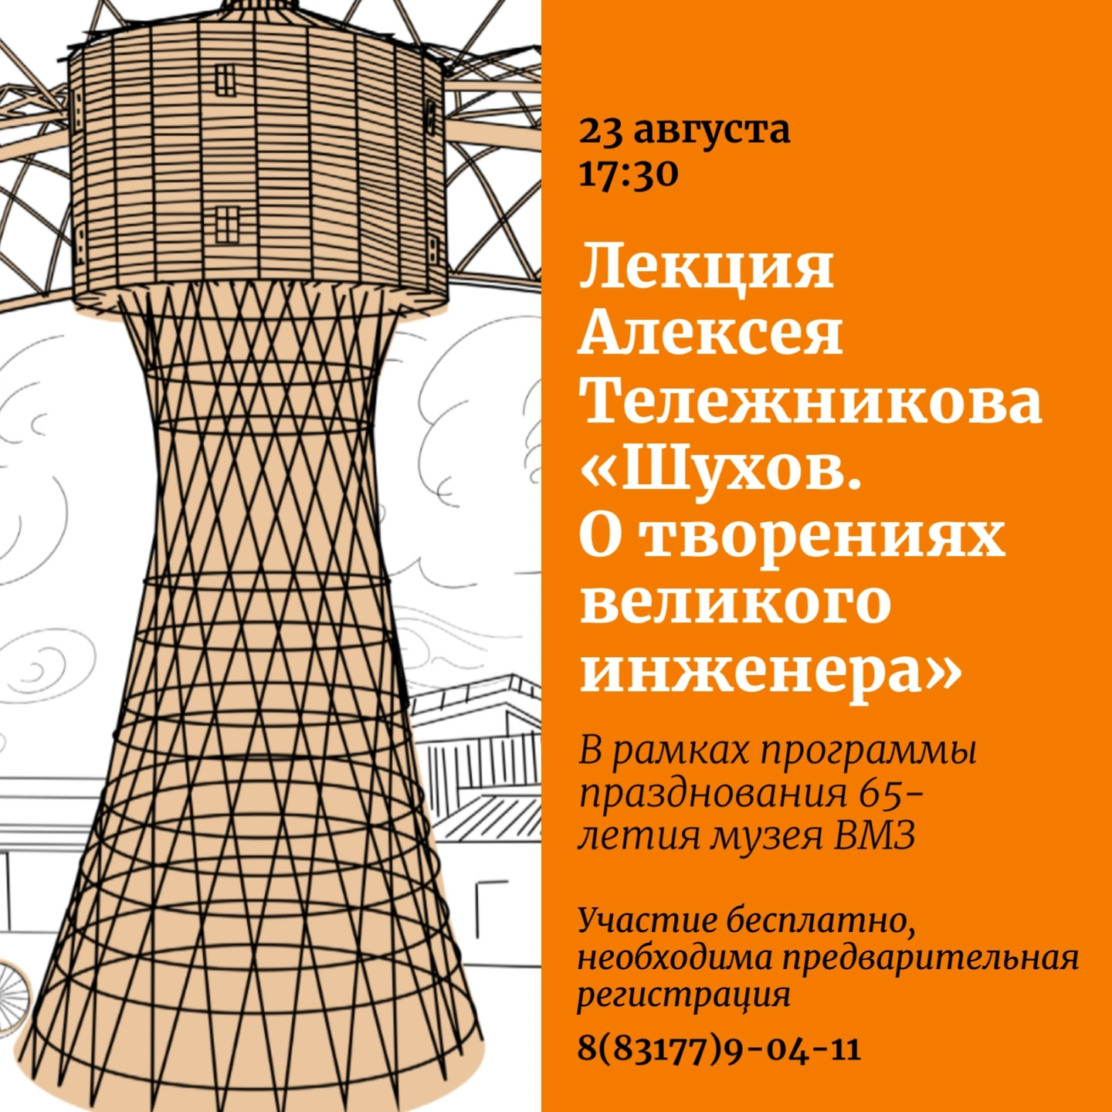 Музей истории приглашает на встречу с Алексеем Тележниковым на тему  «Шухов. О творениях великого инженера»